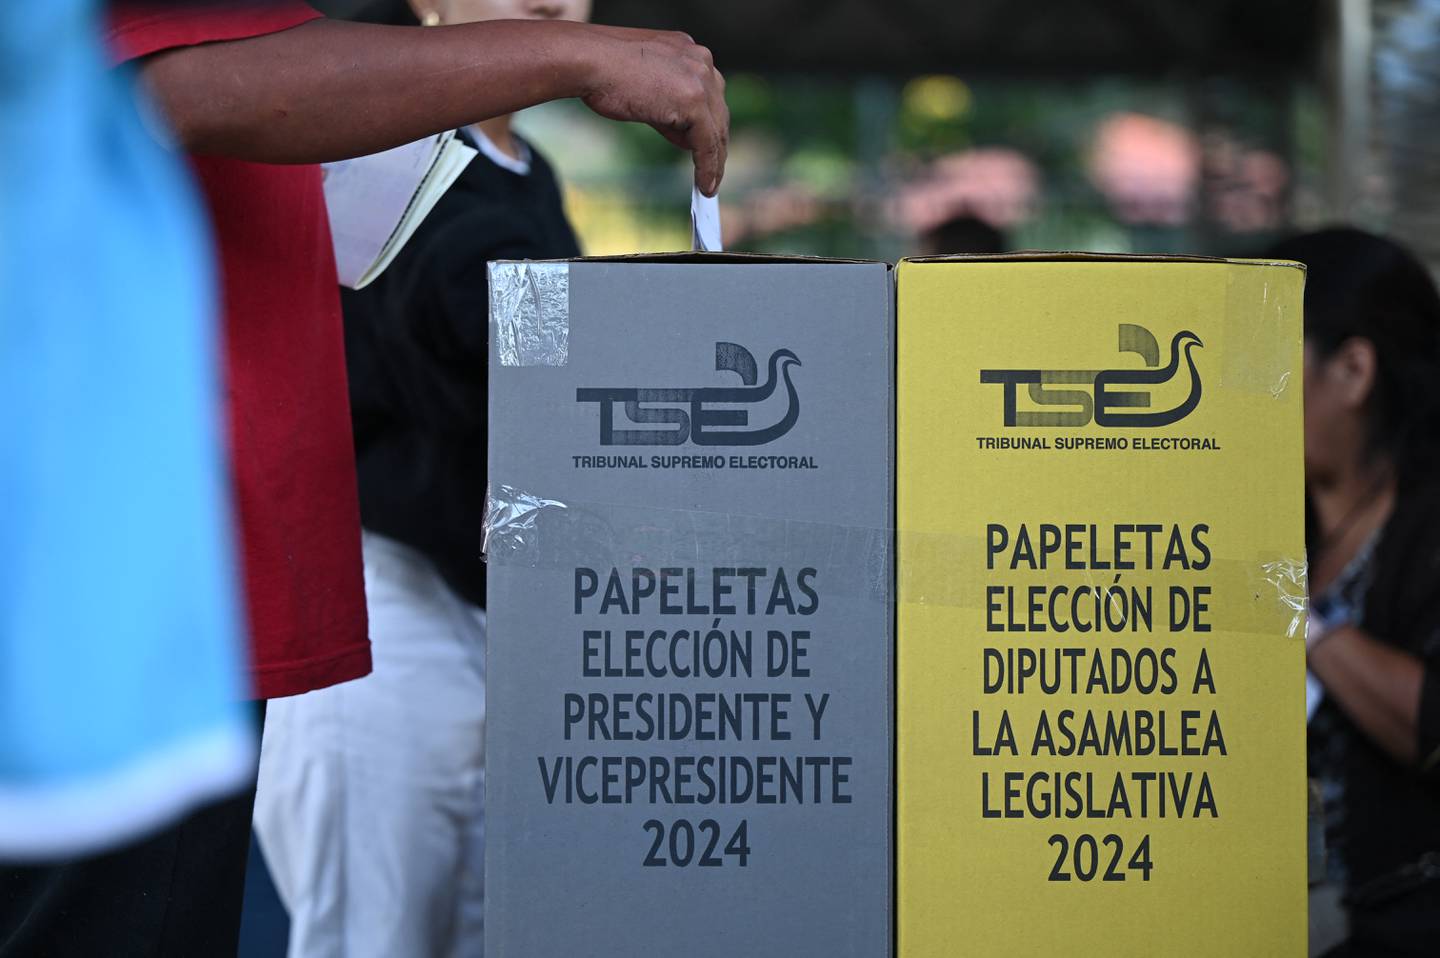 Las elecciones presidenciales y legislativas fueron el pasado 4 de febrero. Desde entonces, han pasado nueve días y el Tribunal Supremo Electoral sigue sin brindar datos de los resultados.